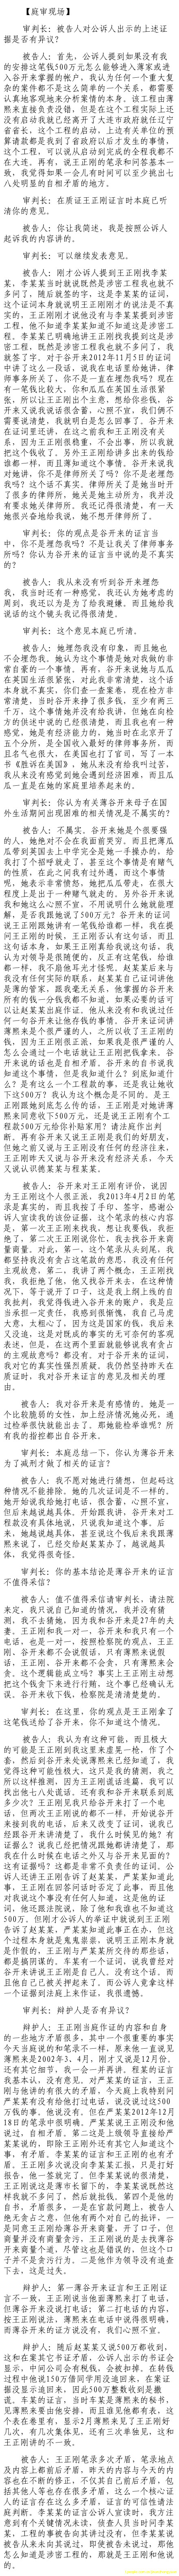 济南市中级法院官方微博公布的8月24日庭审现场记录（5）